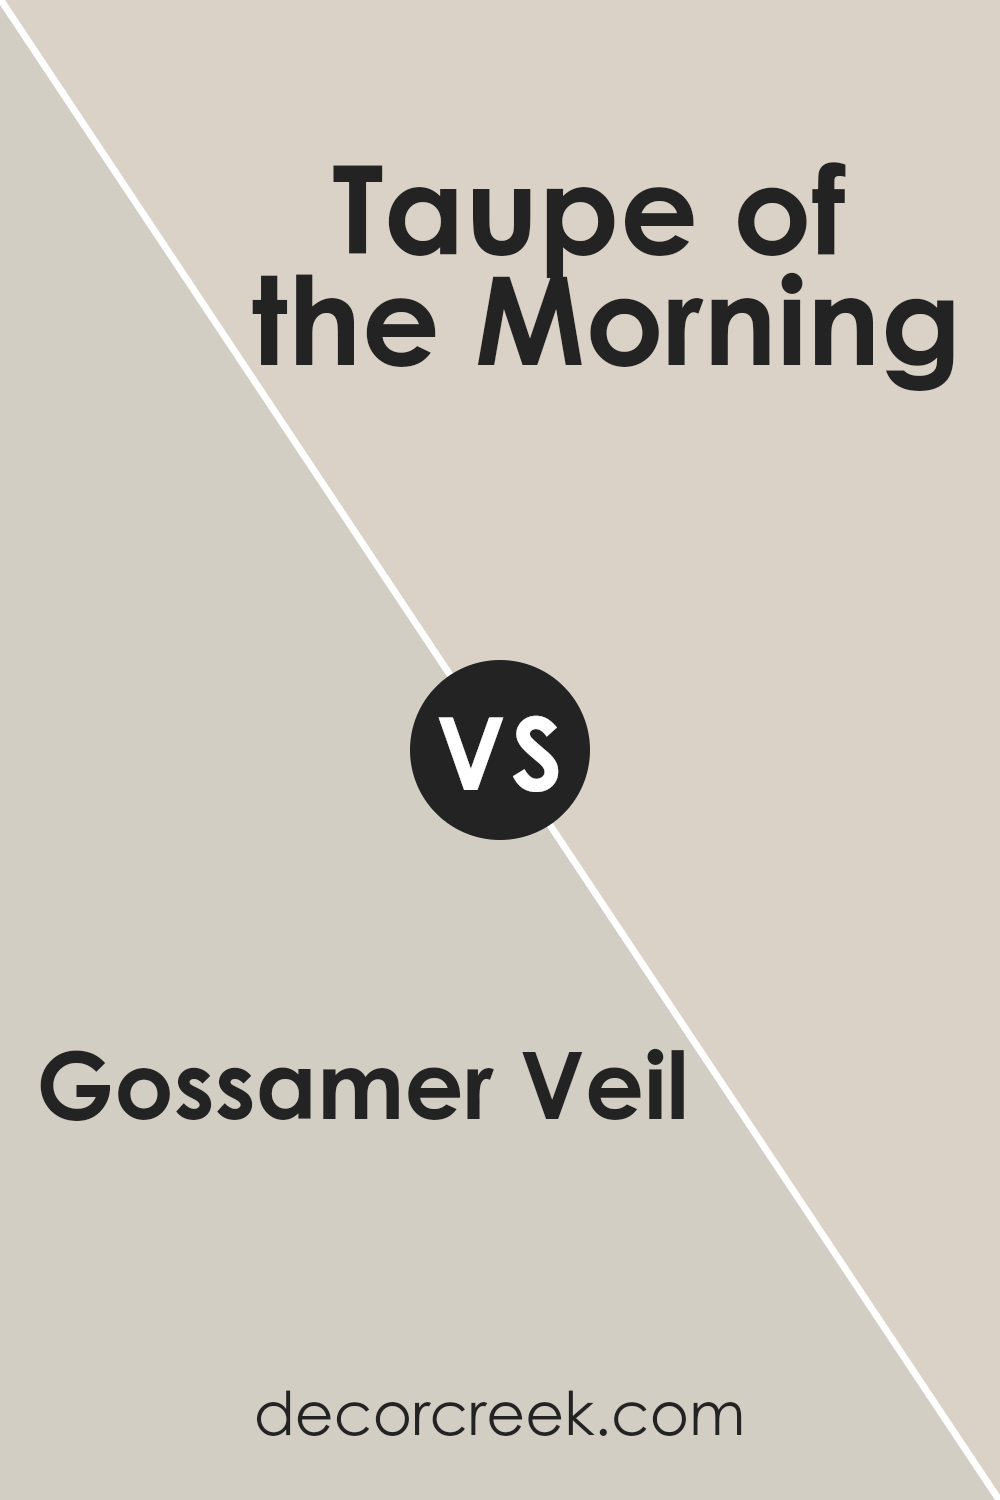 gossamer_veil_sw_9165_vs_taupe_of_the_morning_sw_9590